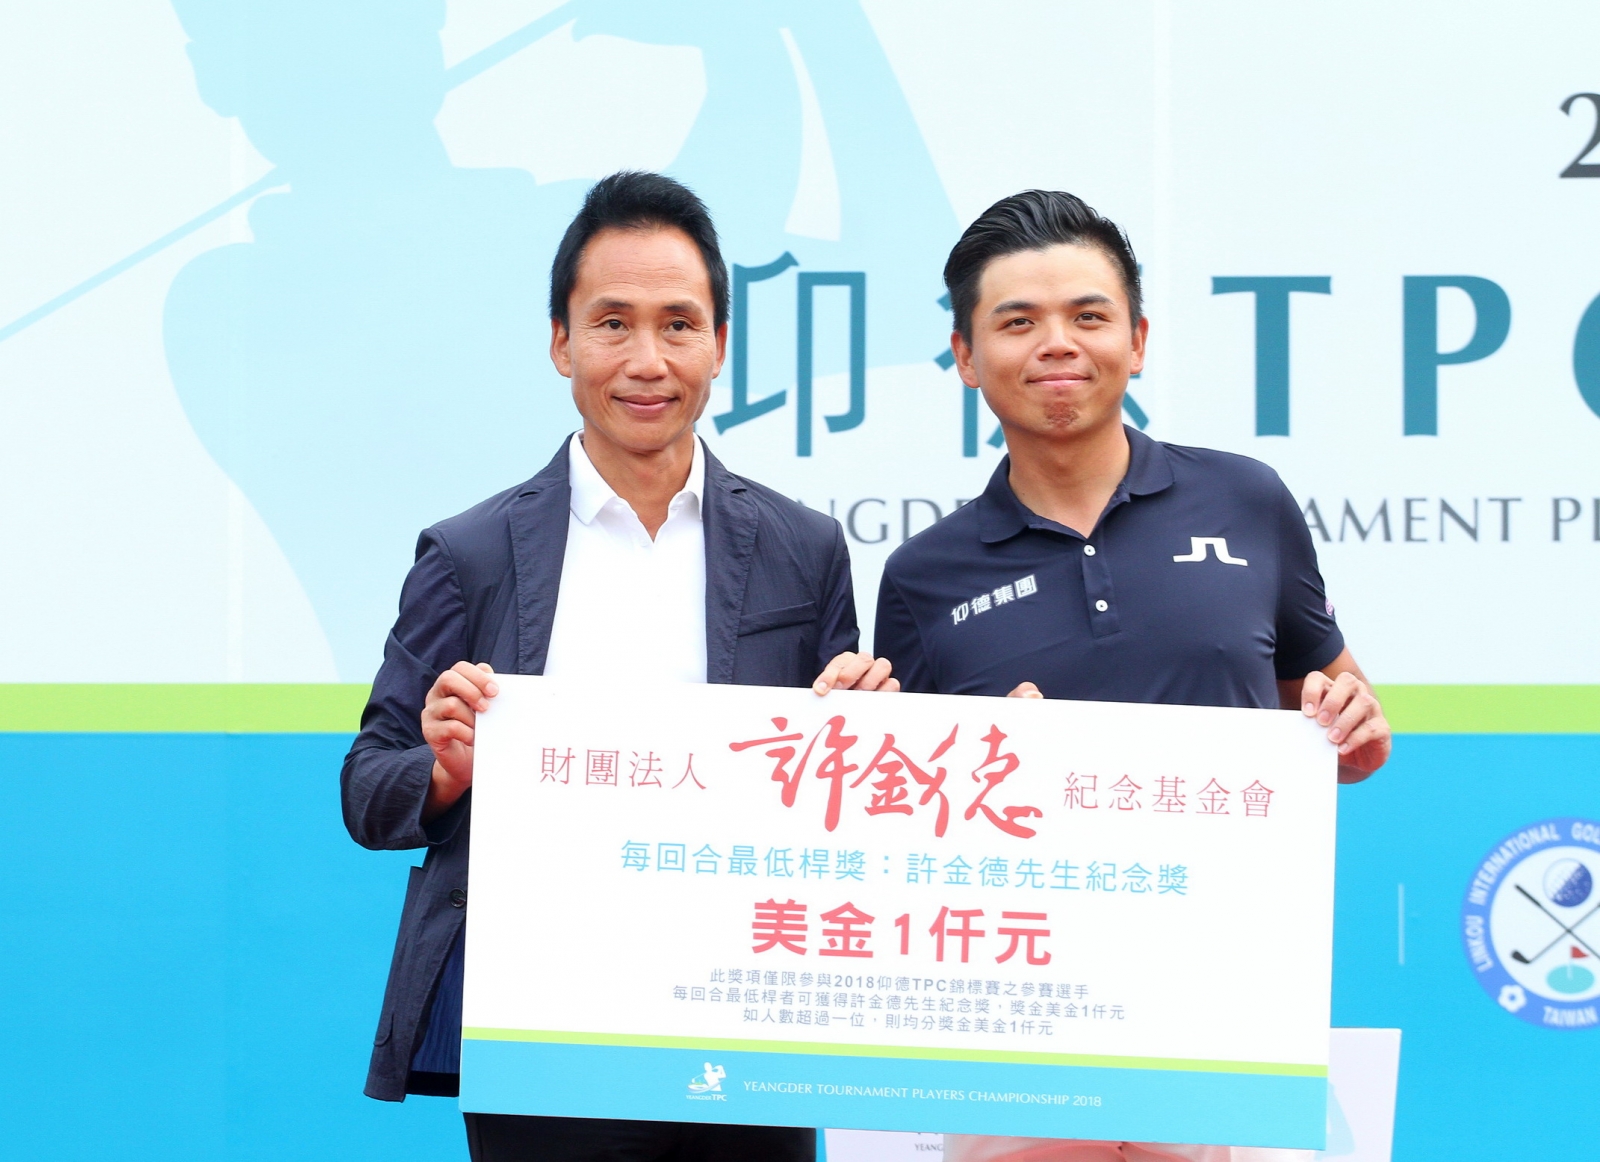 仰德集團許育瑞董事長(左)頒第一回合最低桿獎給洪健堯(鍾豐榮攝影)